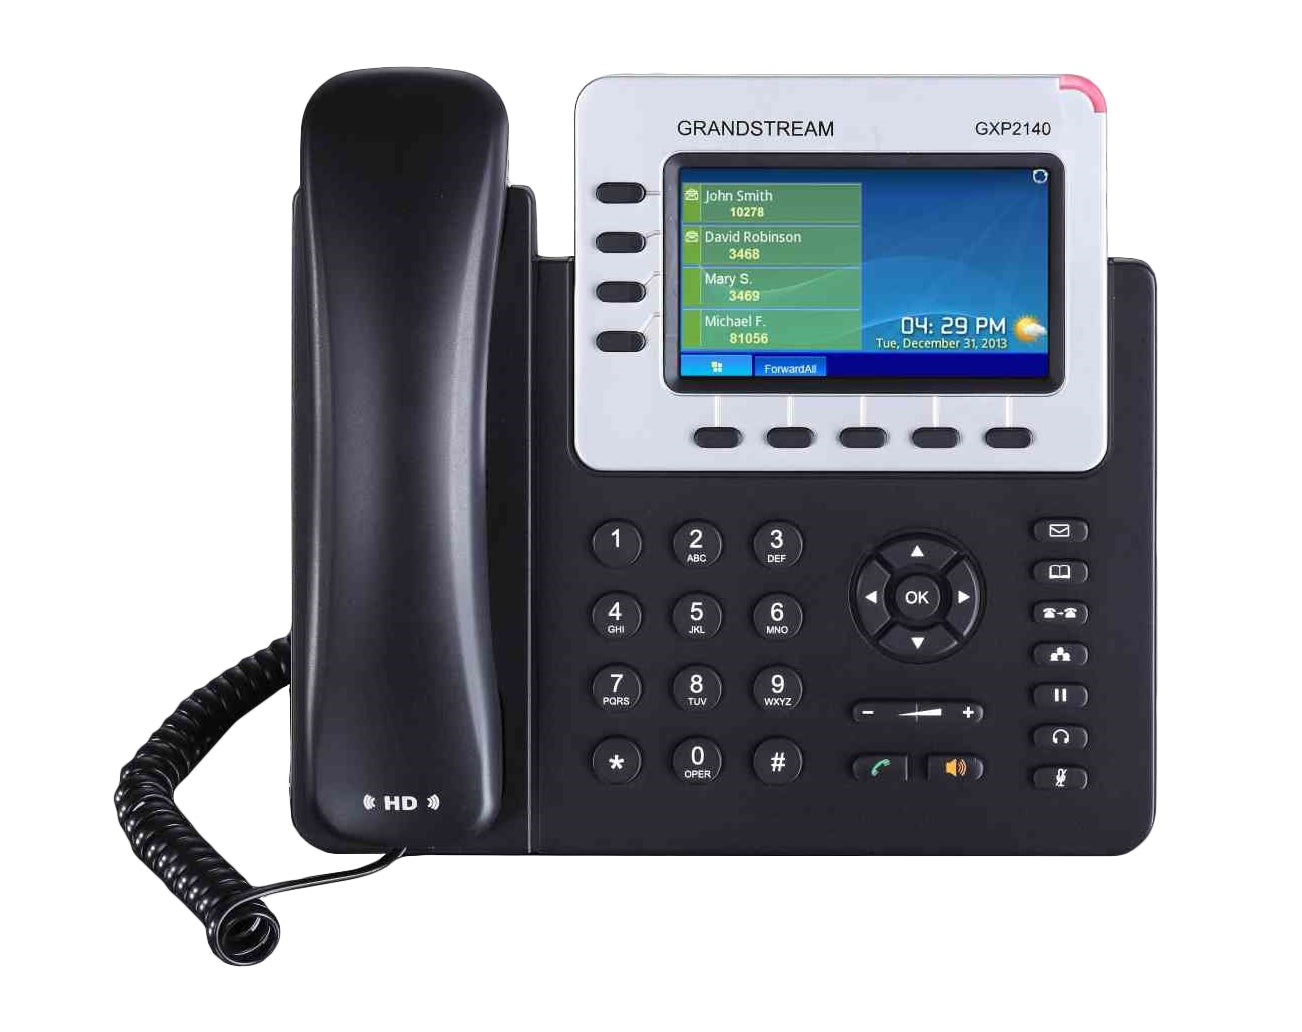 Teléfono Ip Grandstream Gxp2140 Telefono De Lineas Con Cuentas Sip Gigabit Poe Conferencia 5 Vias Bluetooth Incluye Su Fuente Alimentacion